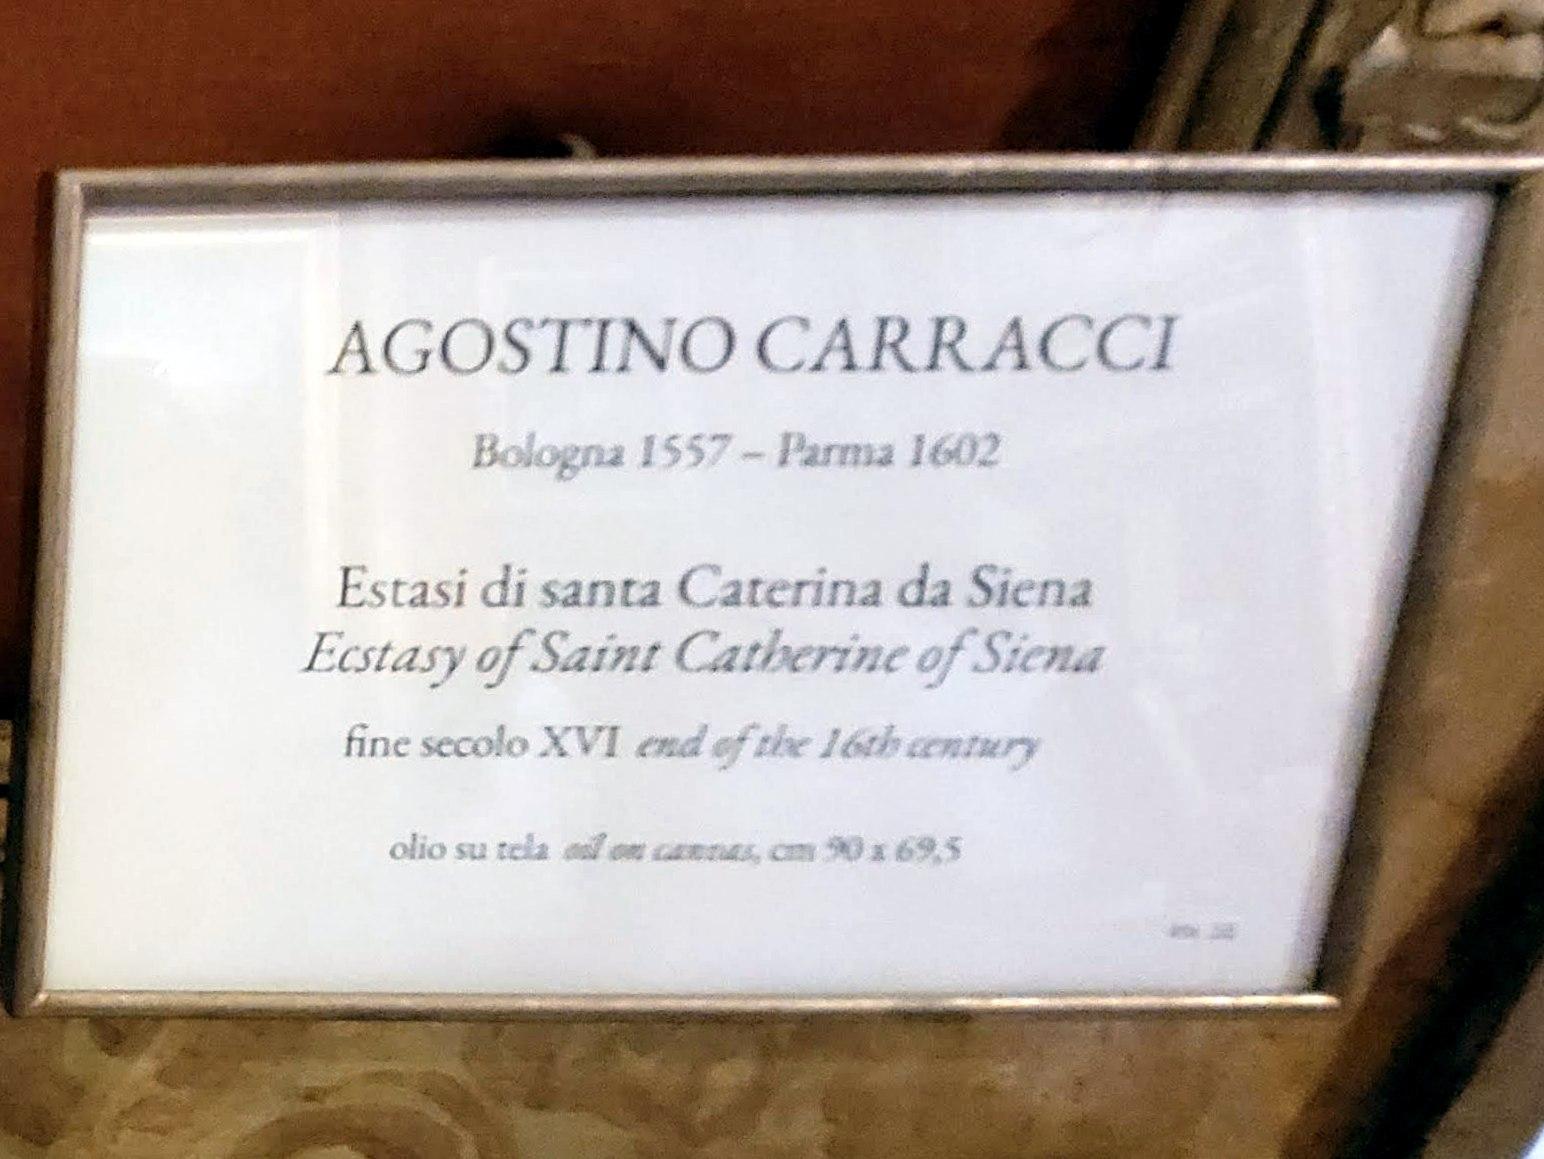 Agostino Carracci (1582–1601), Ekstase der Heiligen Katharina von Siena, Rom, Villa Borghese, Galleria Borghese, Ende 16. Jhd., Bild 2/2